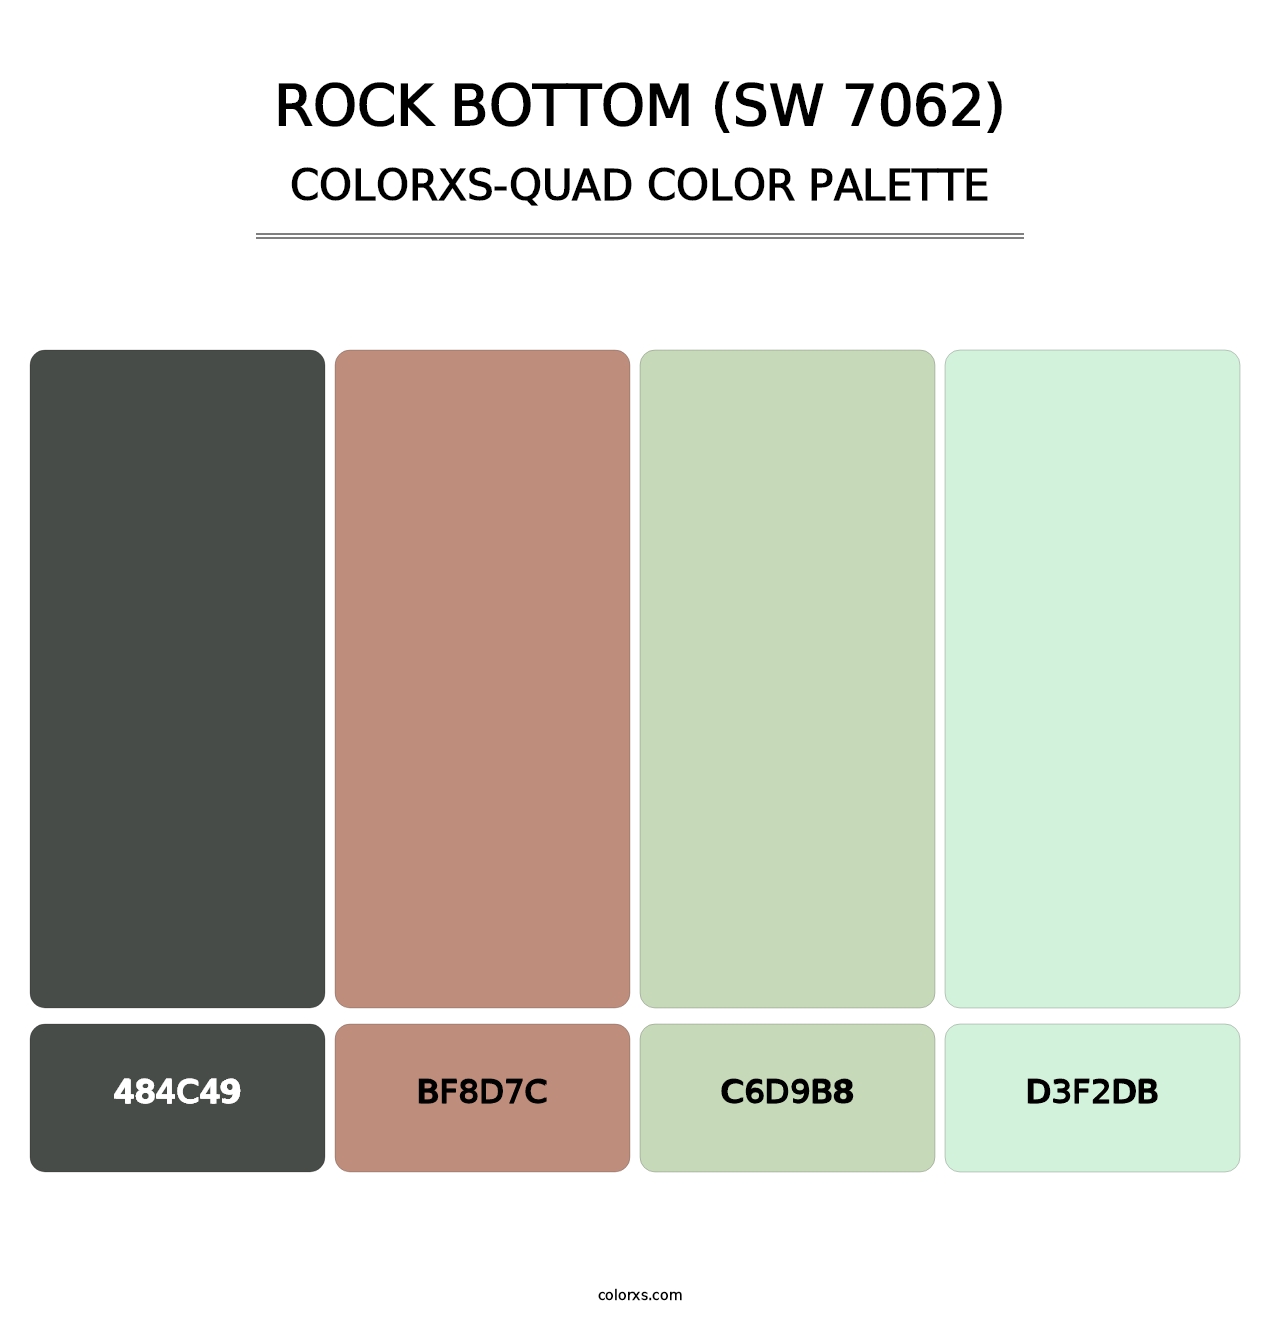 Rock Bottom (SW 7062) - Colorxs Quad Palette